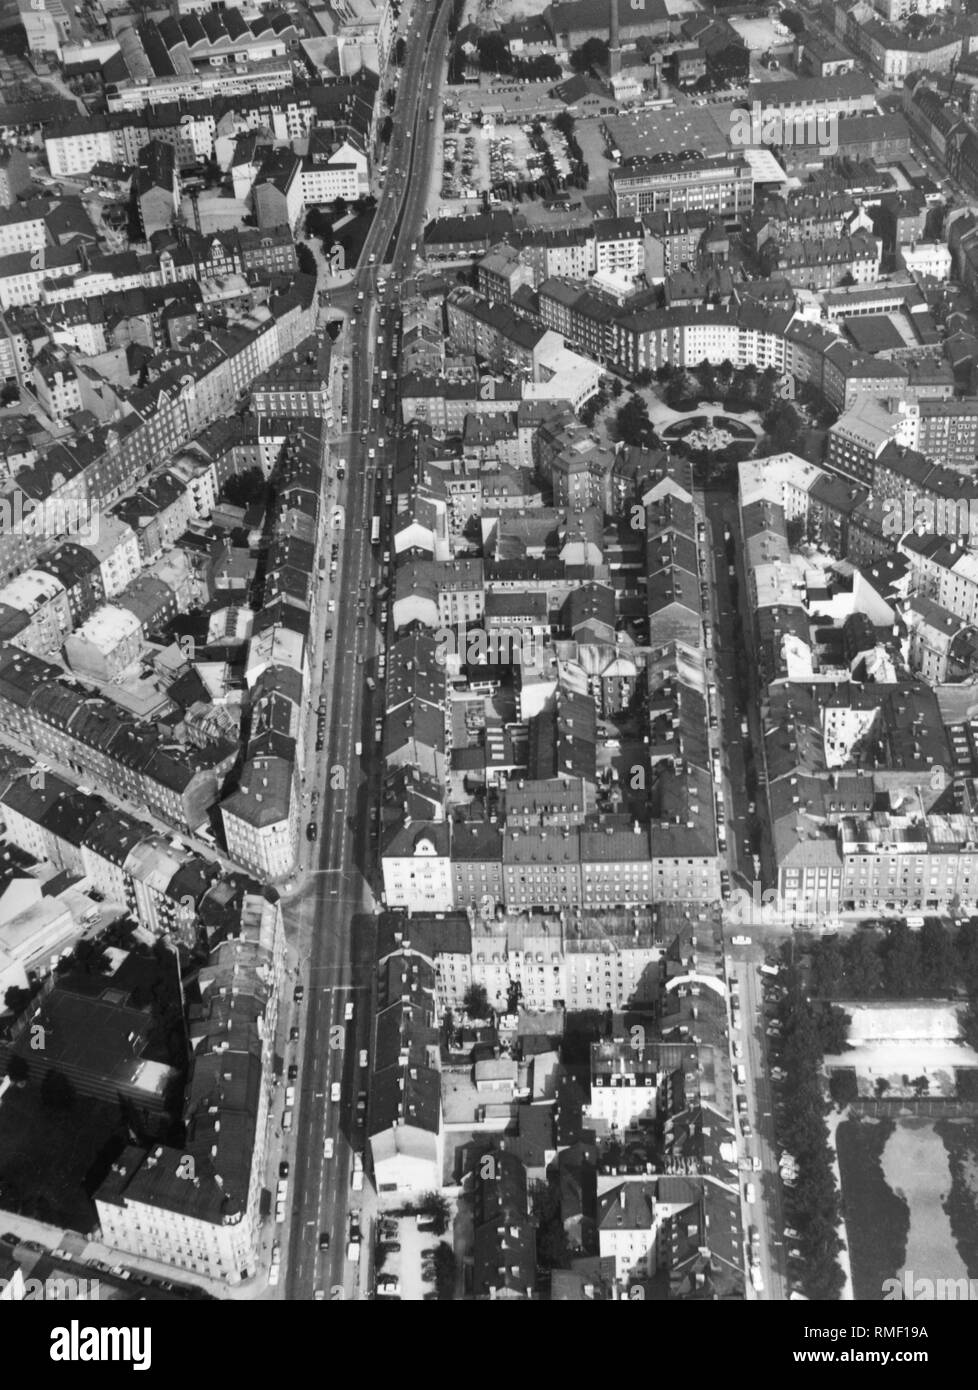 Luftaufnahme der Münchner Stadtteil Haidhausen. Die runde Weissenburger Platz ist gut erkennbar. Stockfoto